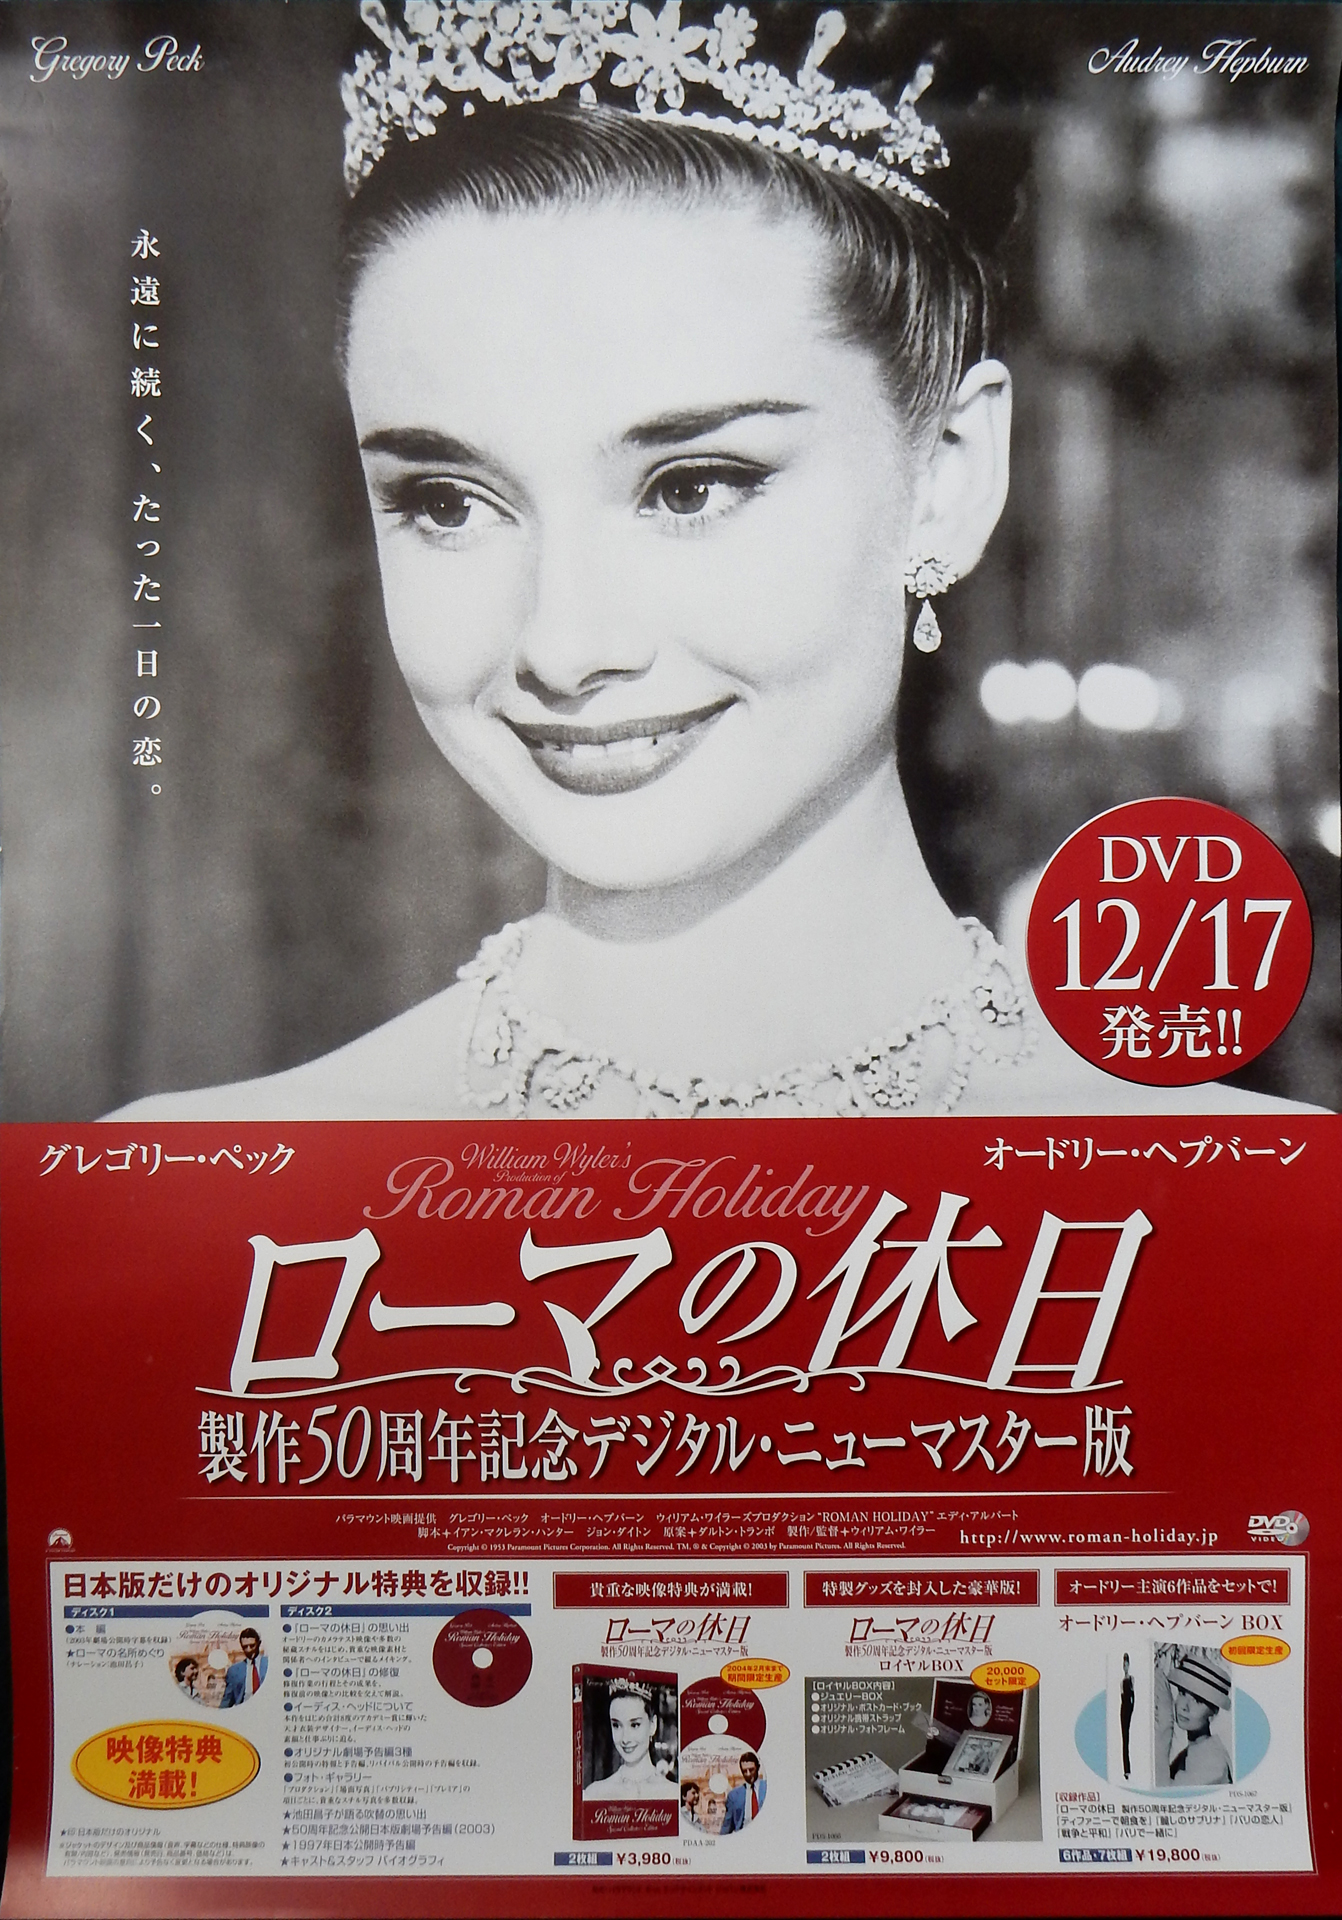 ローマの休日 DVD12/17発売のポスター